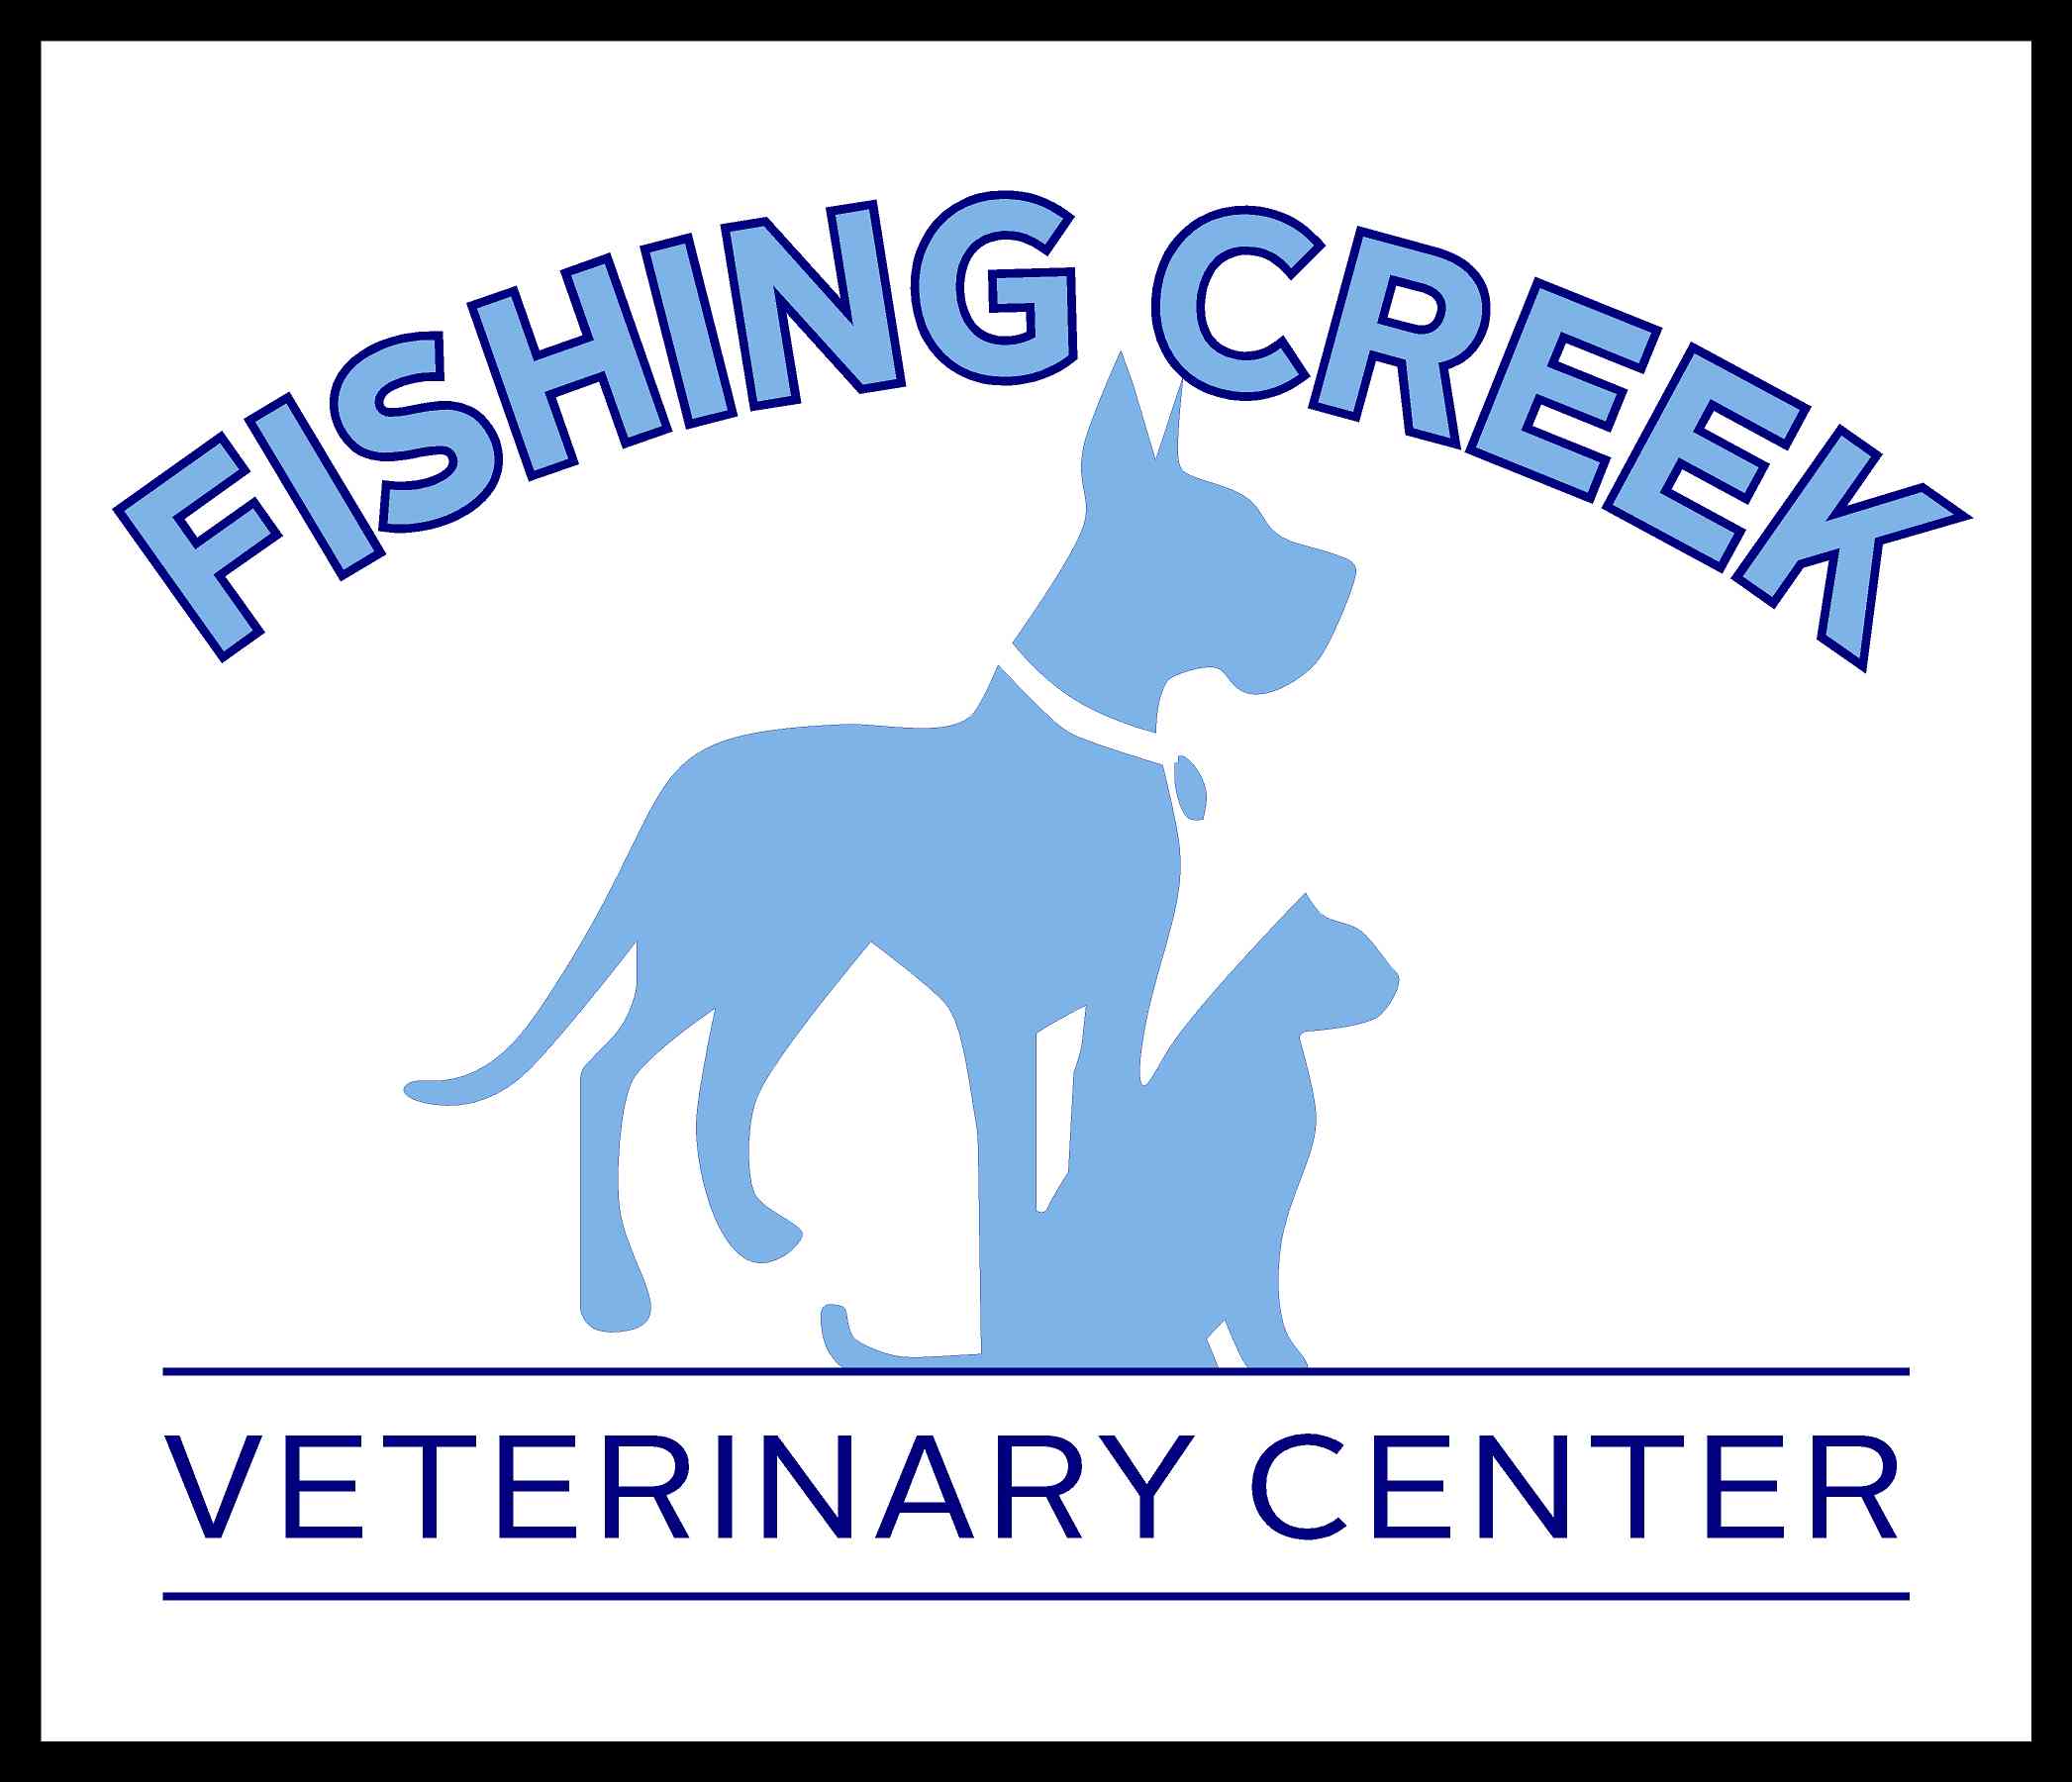 Fishing Creek Veterinary Center